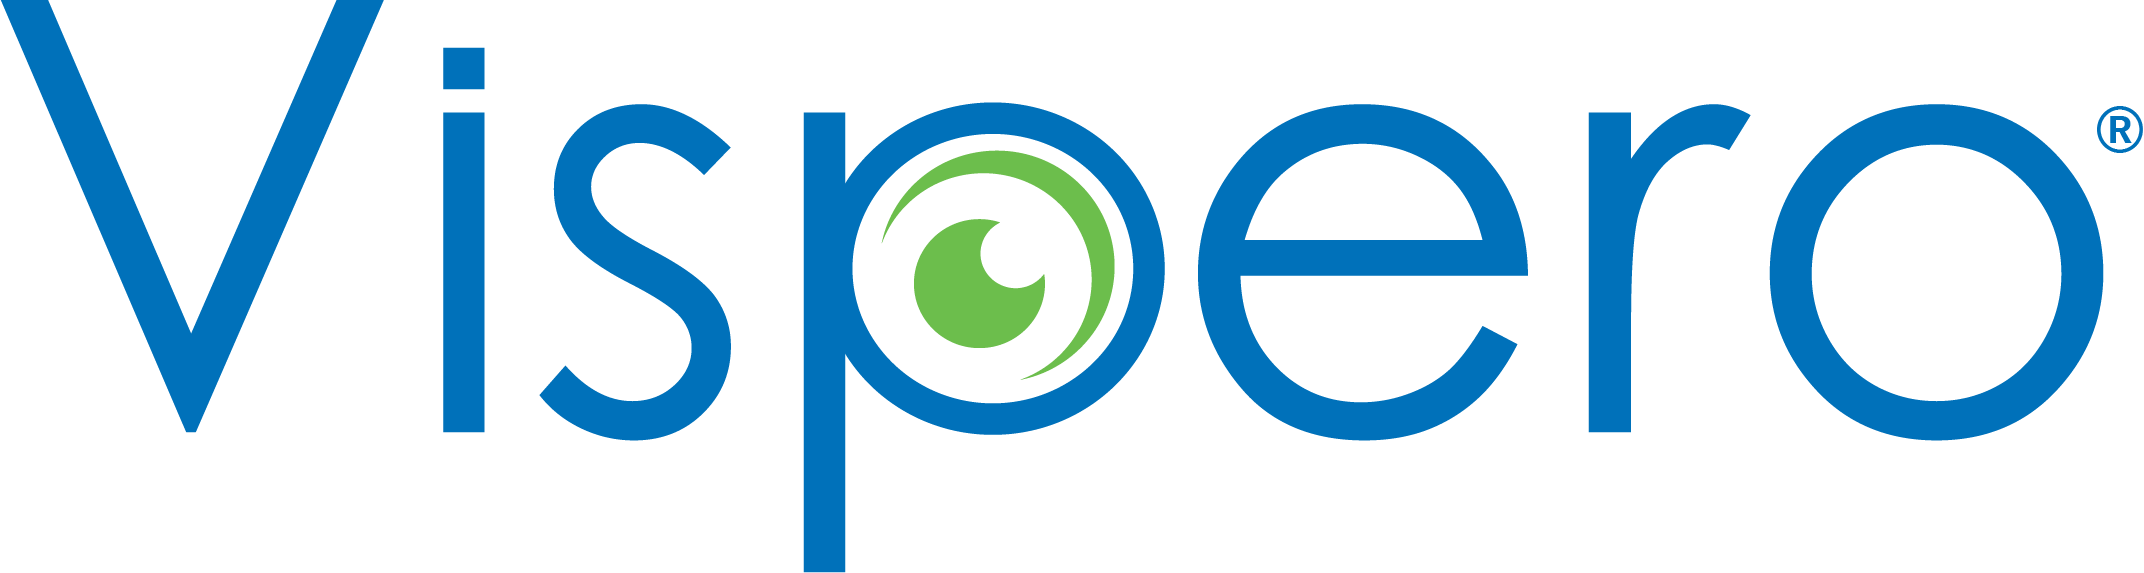 Vispero Logo